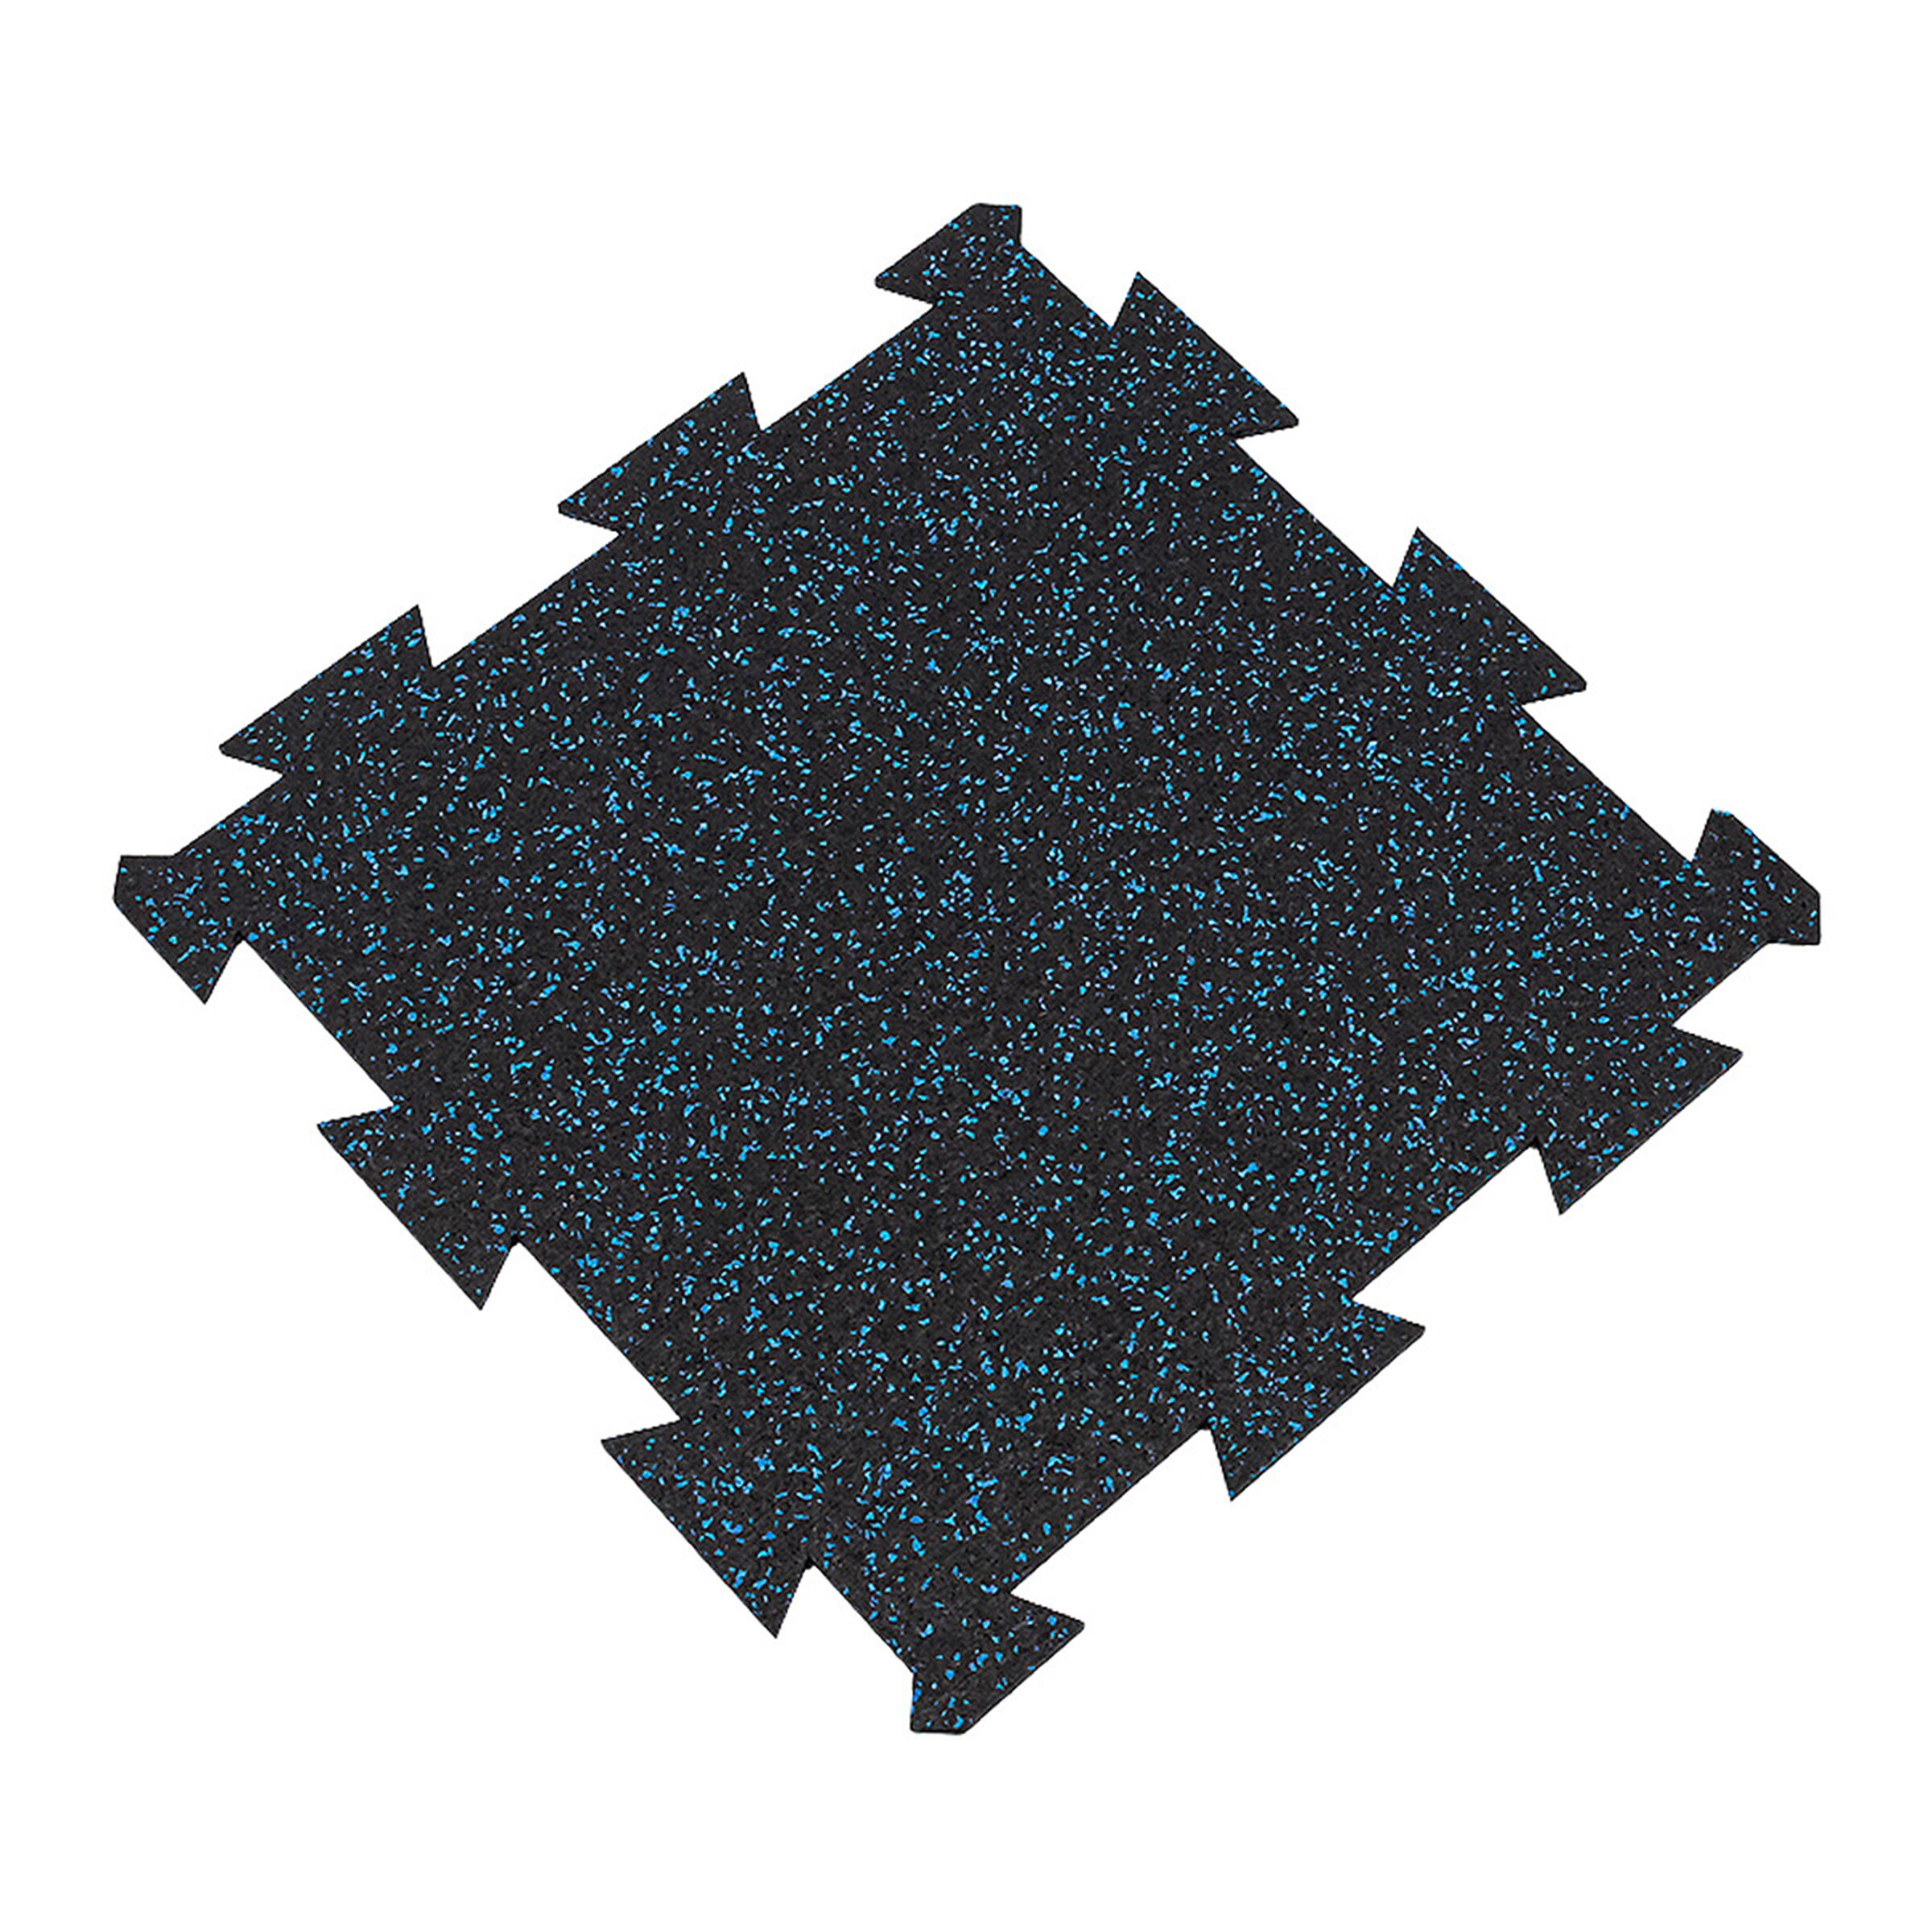 Černo-modrá gumová modulová puzzle dlažba FLOMA FitFlo SF1050 - délka 50 cm, šířka 50 cm, výška 1 cm